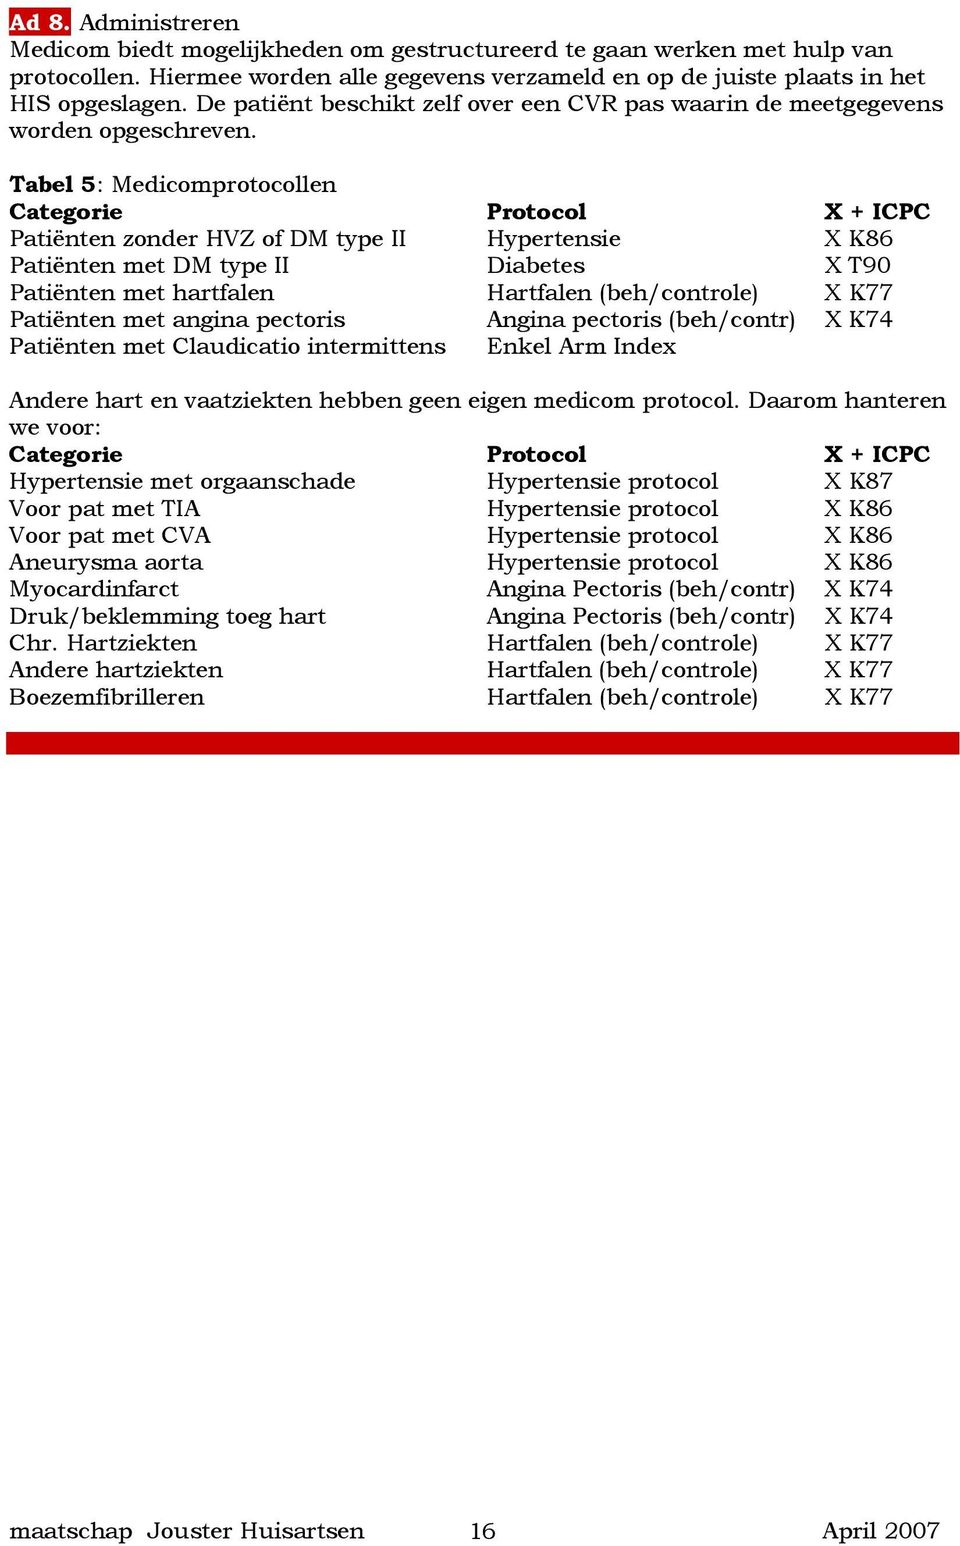 Tabel 5: Medicomprotocollen Categorie Protocol X + ICPC Patiënten zonder HVZ of DM type II Hypertensie X K86 Patiënten met DM type II Diabetes X T90 Patiënten met hartfalen Hartfalen (beh/controle) X